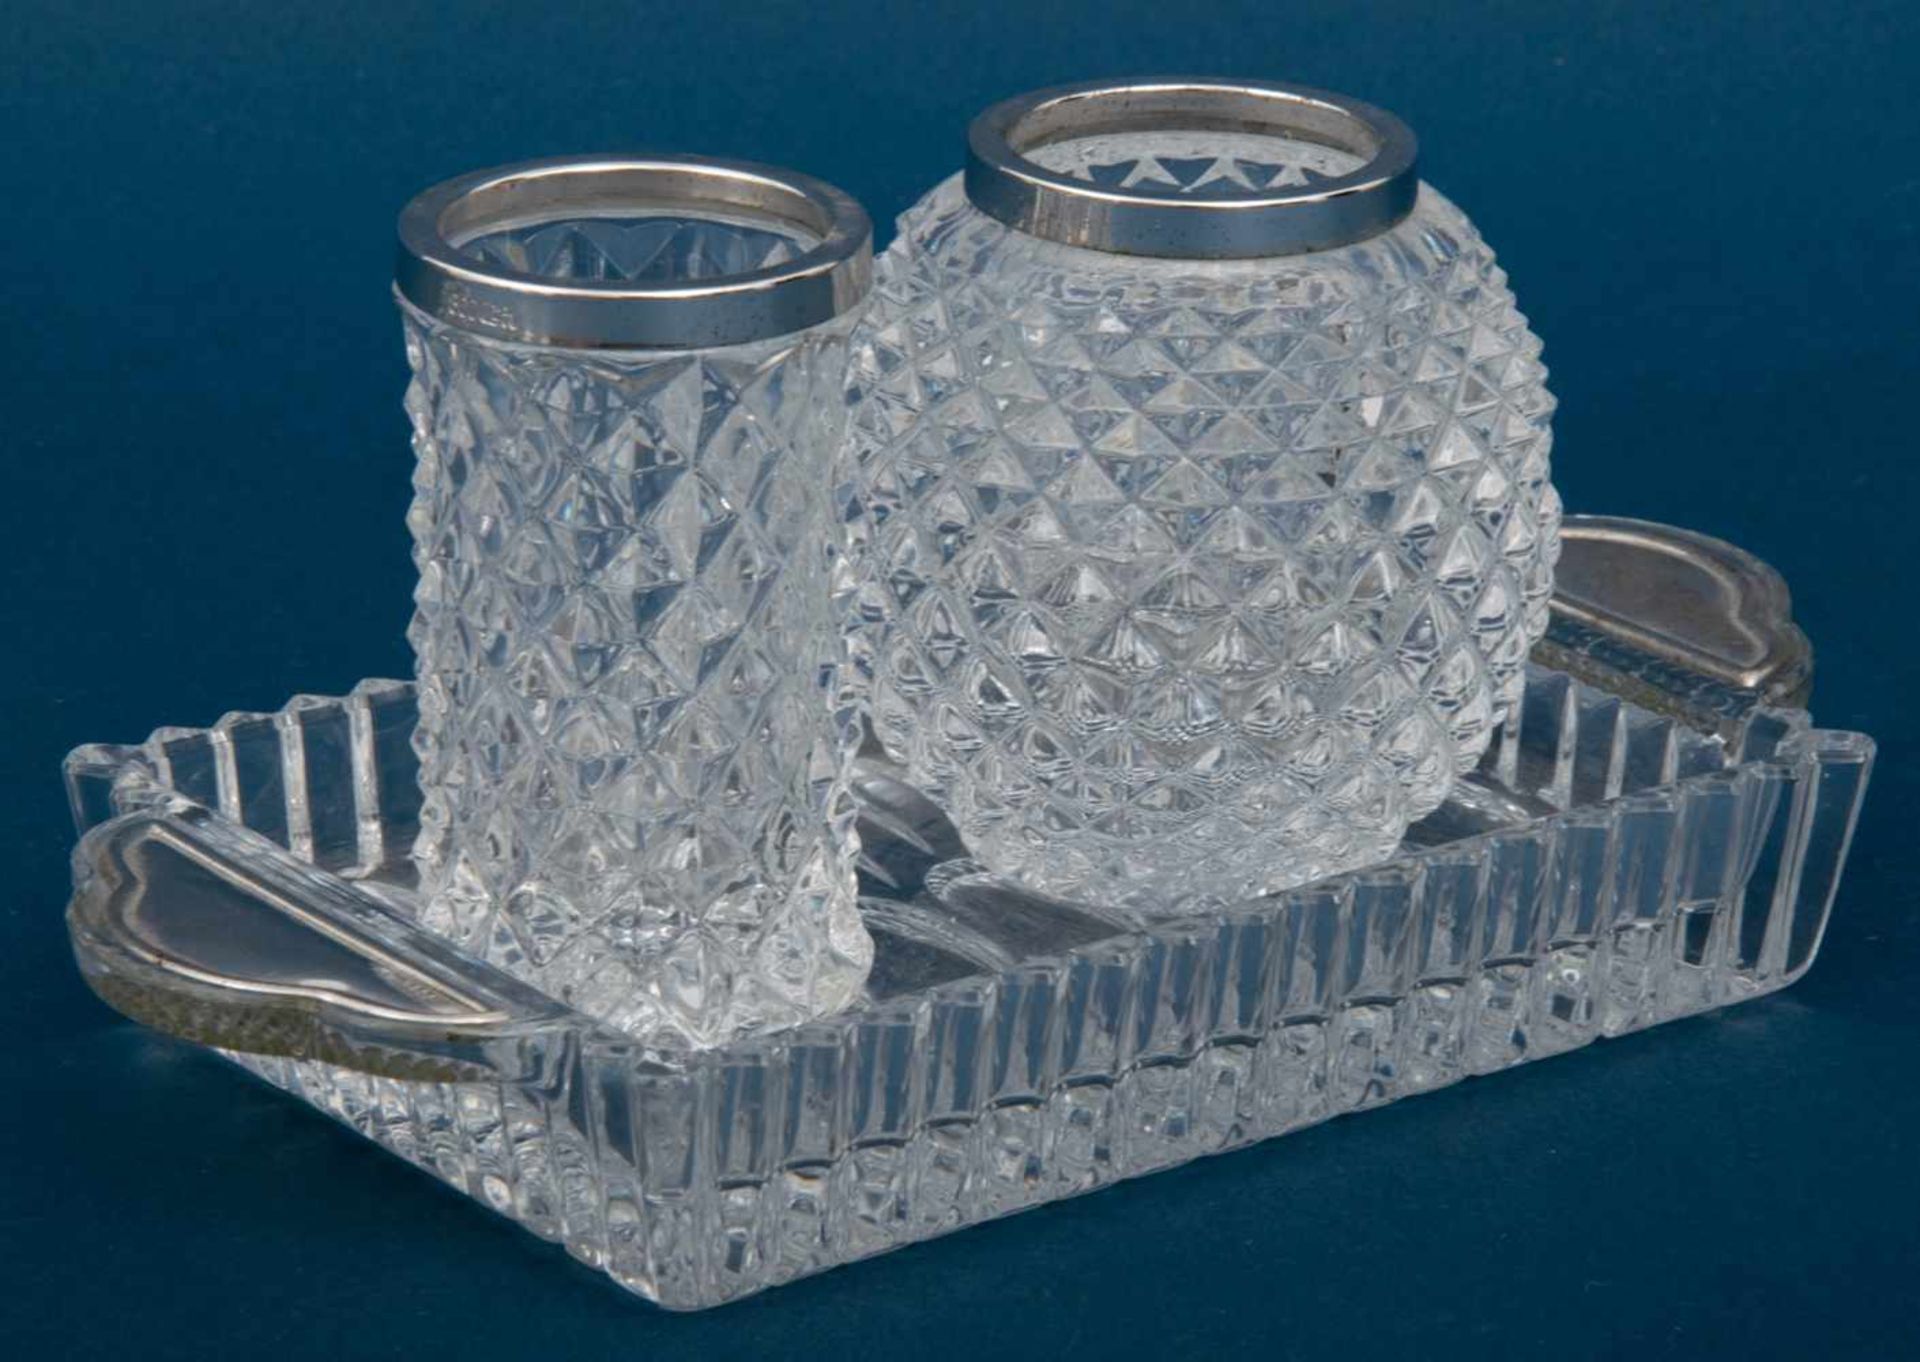 3 Teile Glas mit Silbermonturen, Tablett leicht bestoßen. Maße: Tablett ca. 2,5 x 18 x 9,5 cm, Vasen